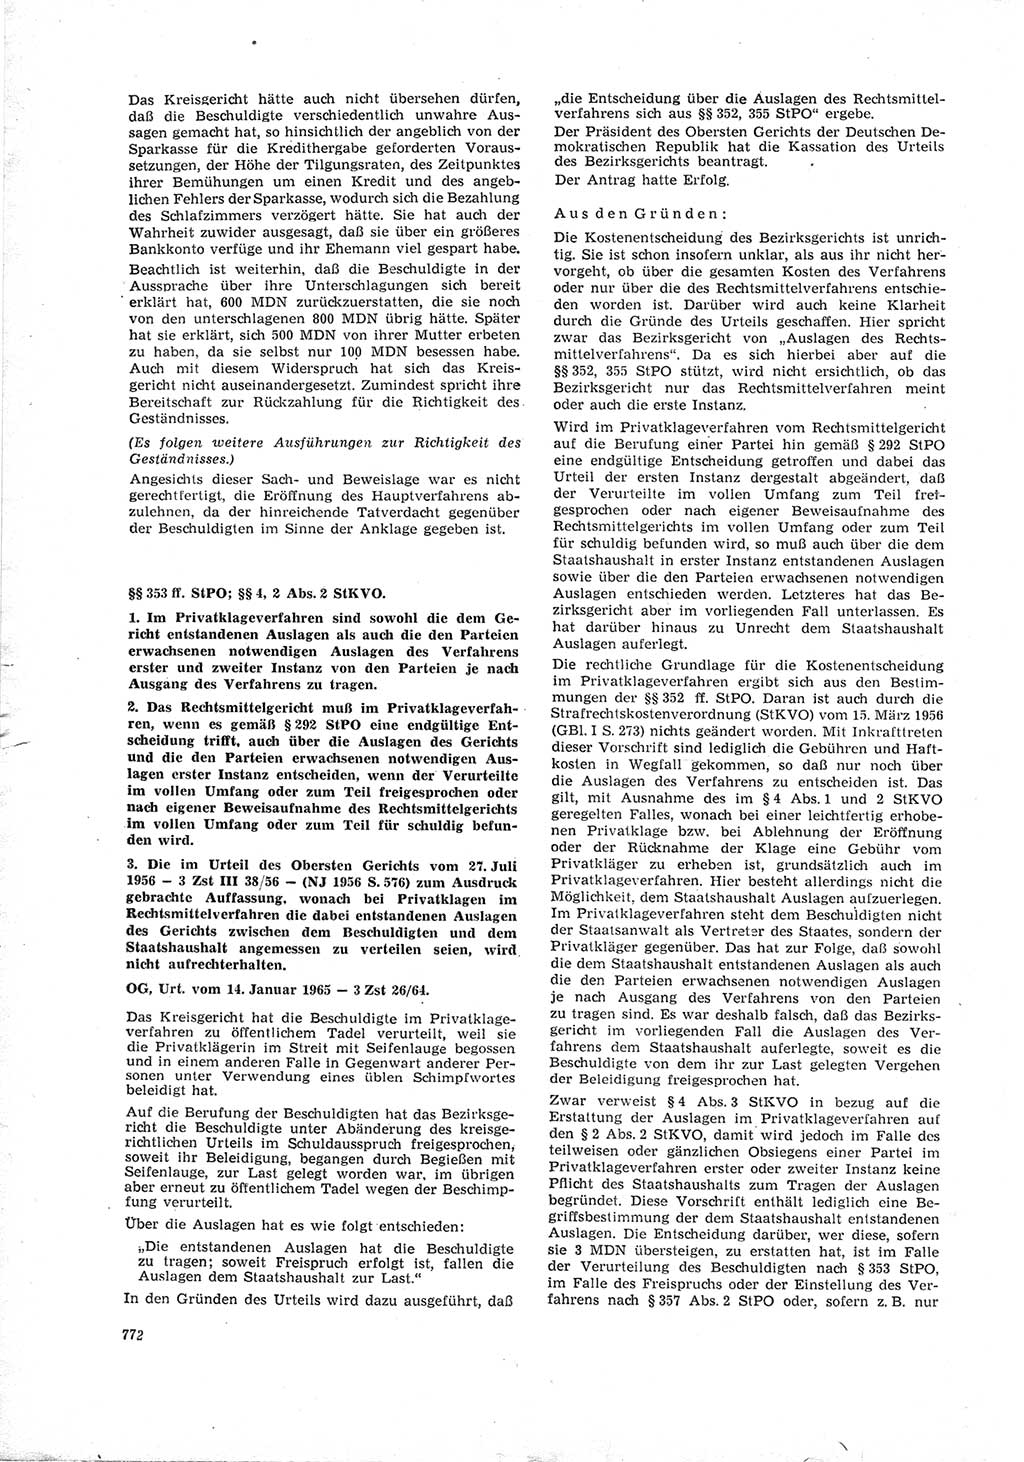 Neue Justiz (NJ), Zeitschrift für Recht und Rechtswissenschaft [Deutsche Demokratische Republik (DDR)], 19. Jahrgang 1965, Seite 772 (NJ DDR 1965, S. 772)